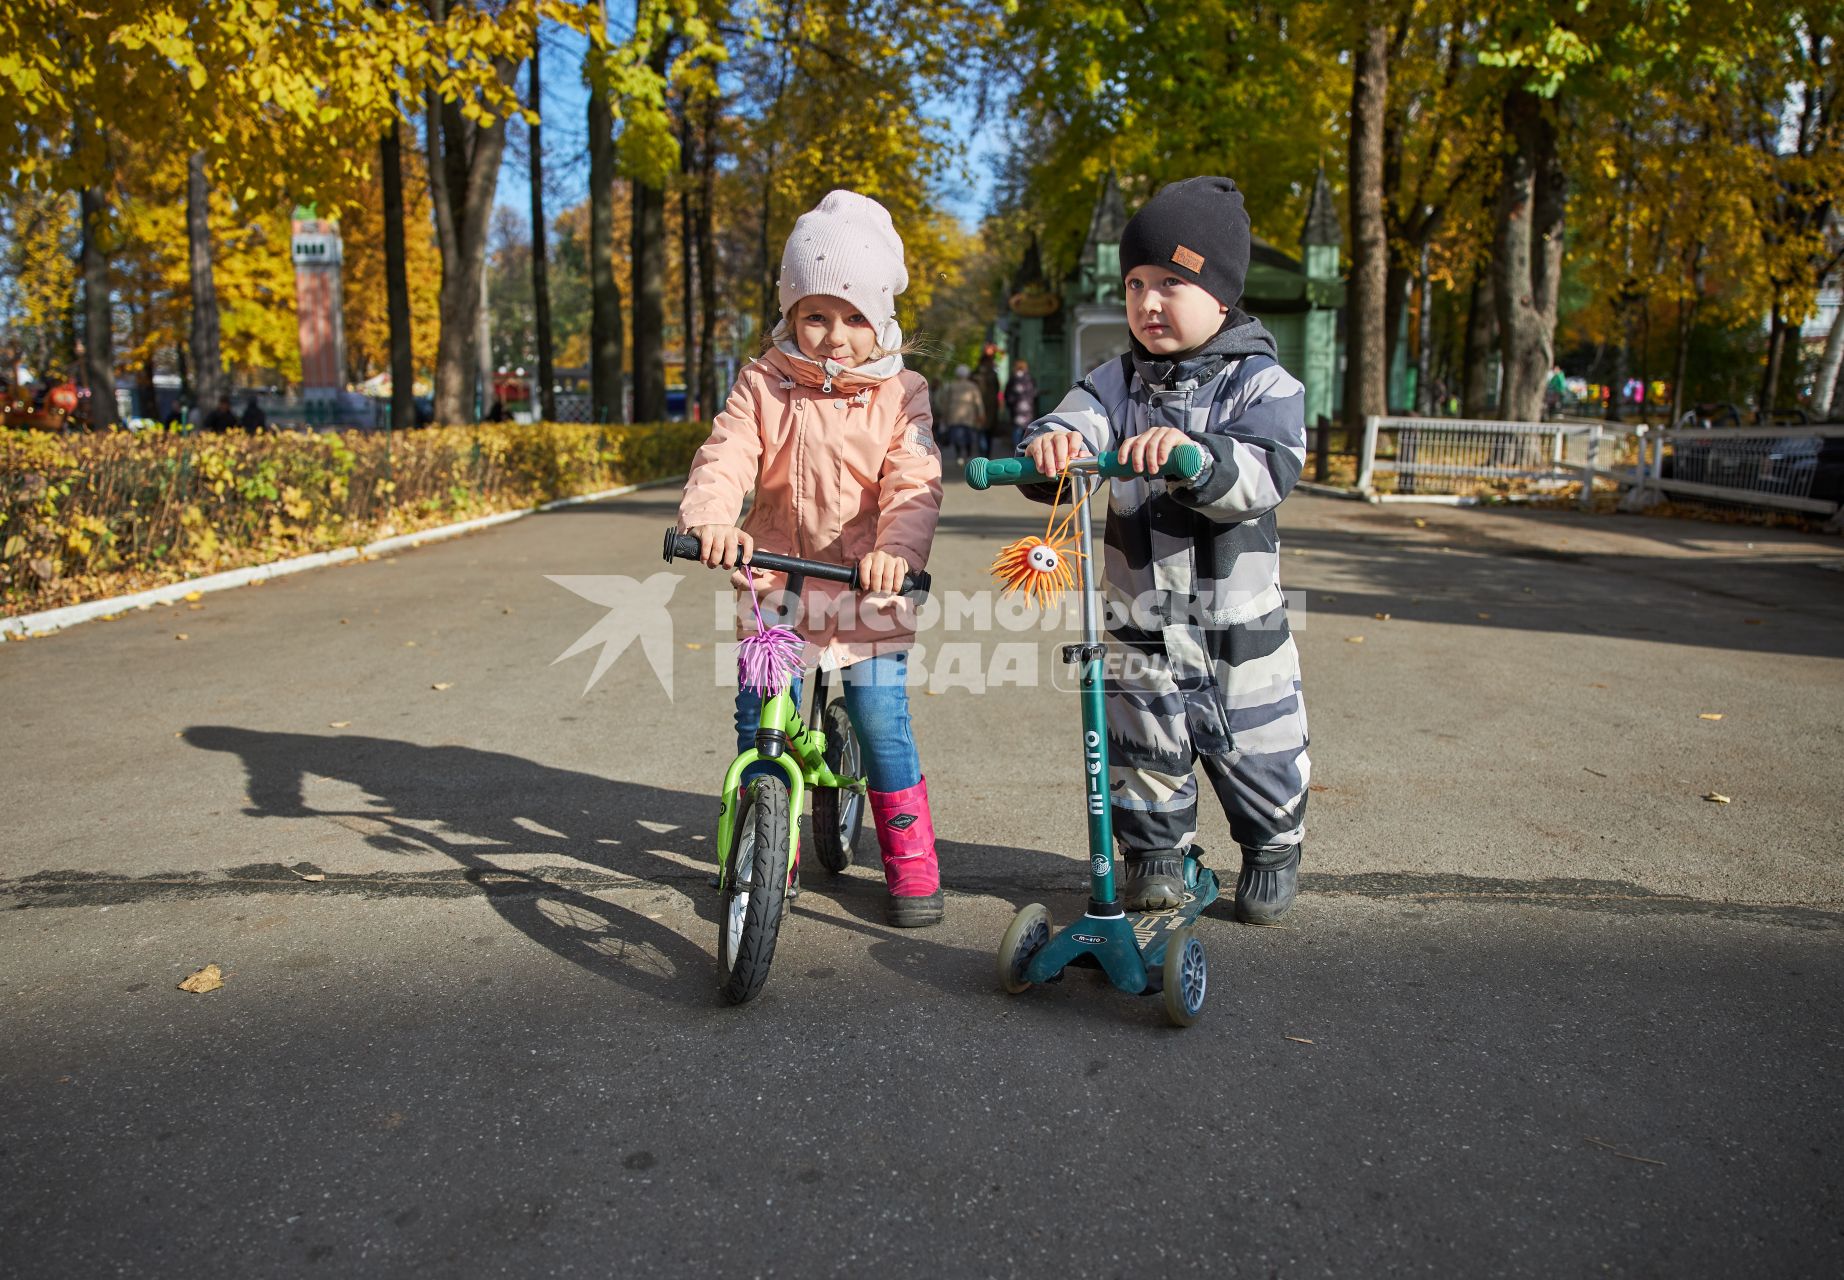 Пермь. Дети во время прогулки в осеннем парке.